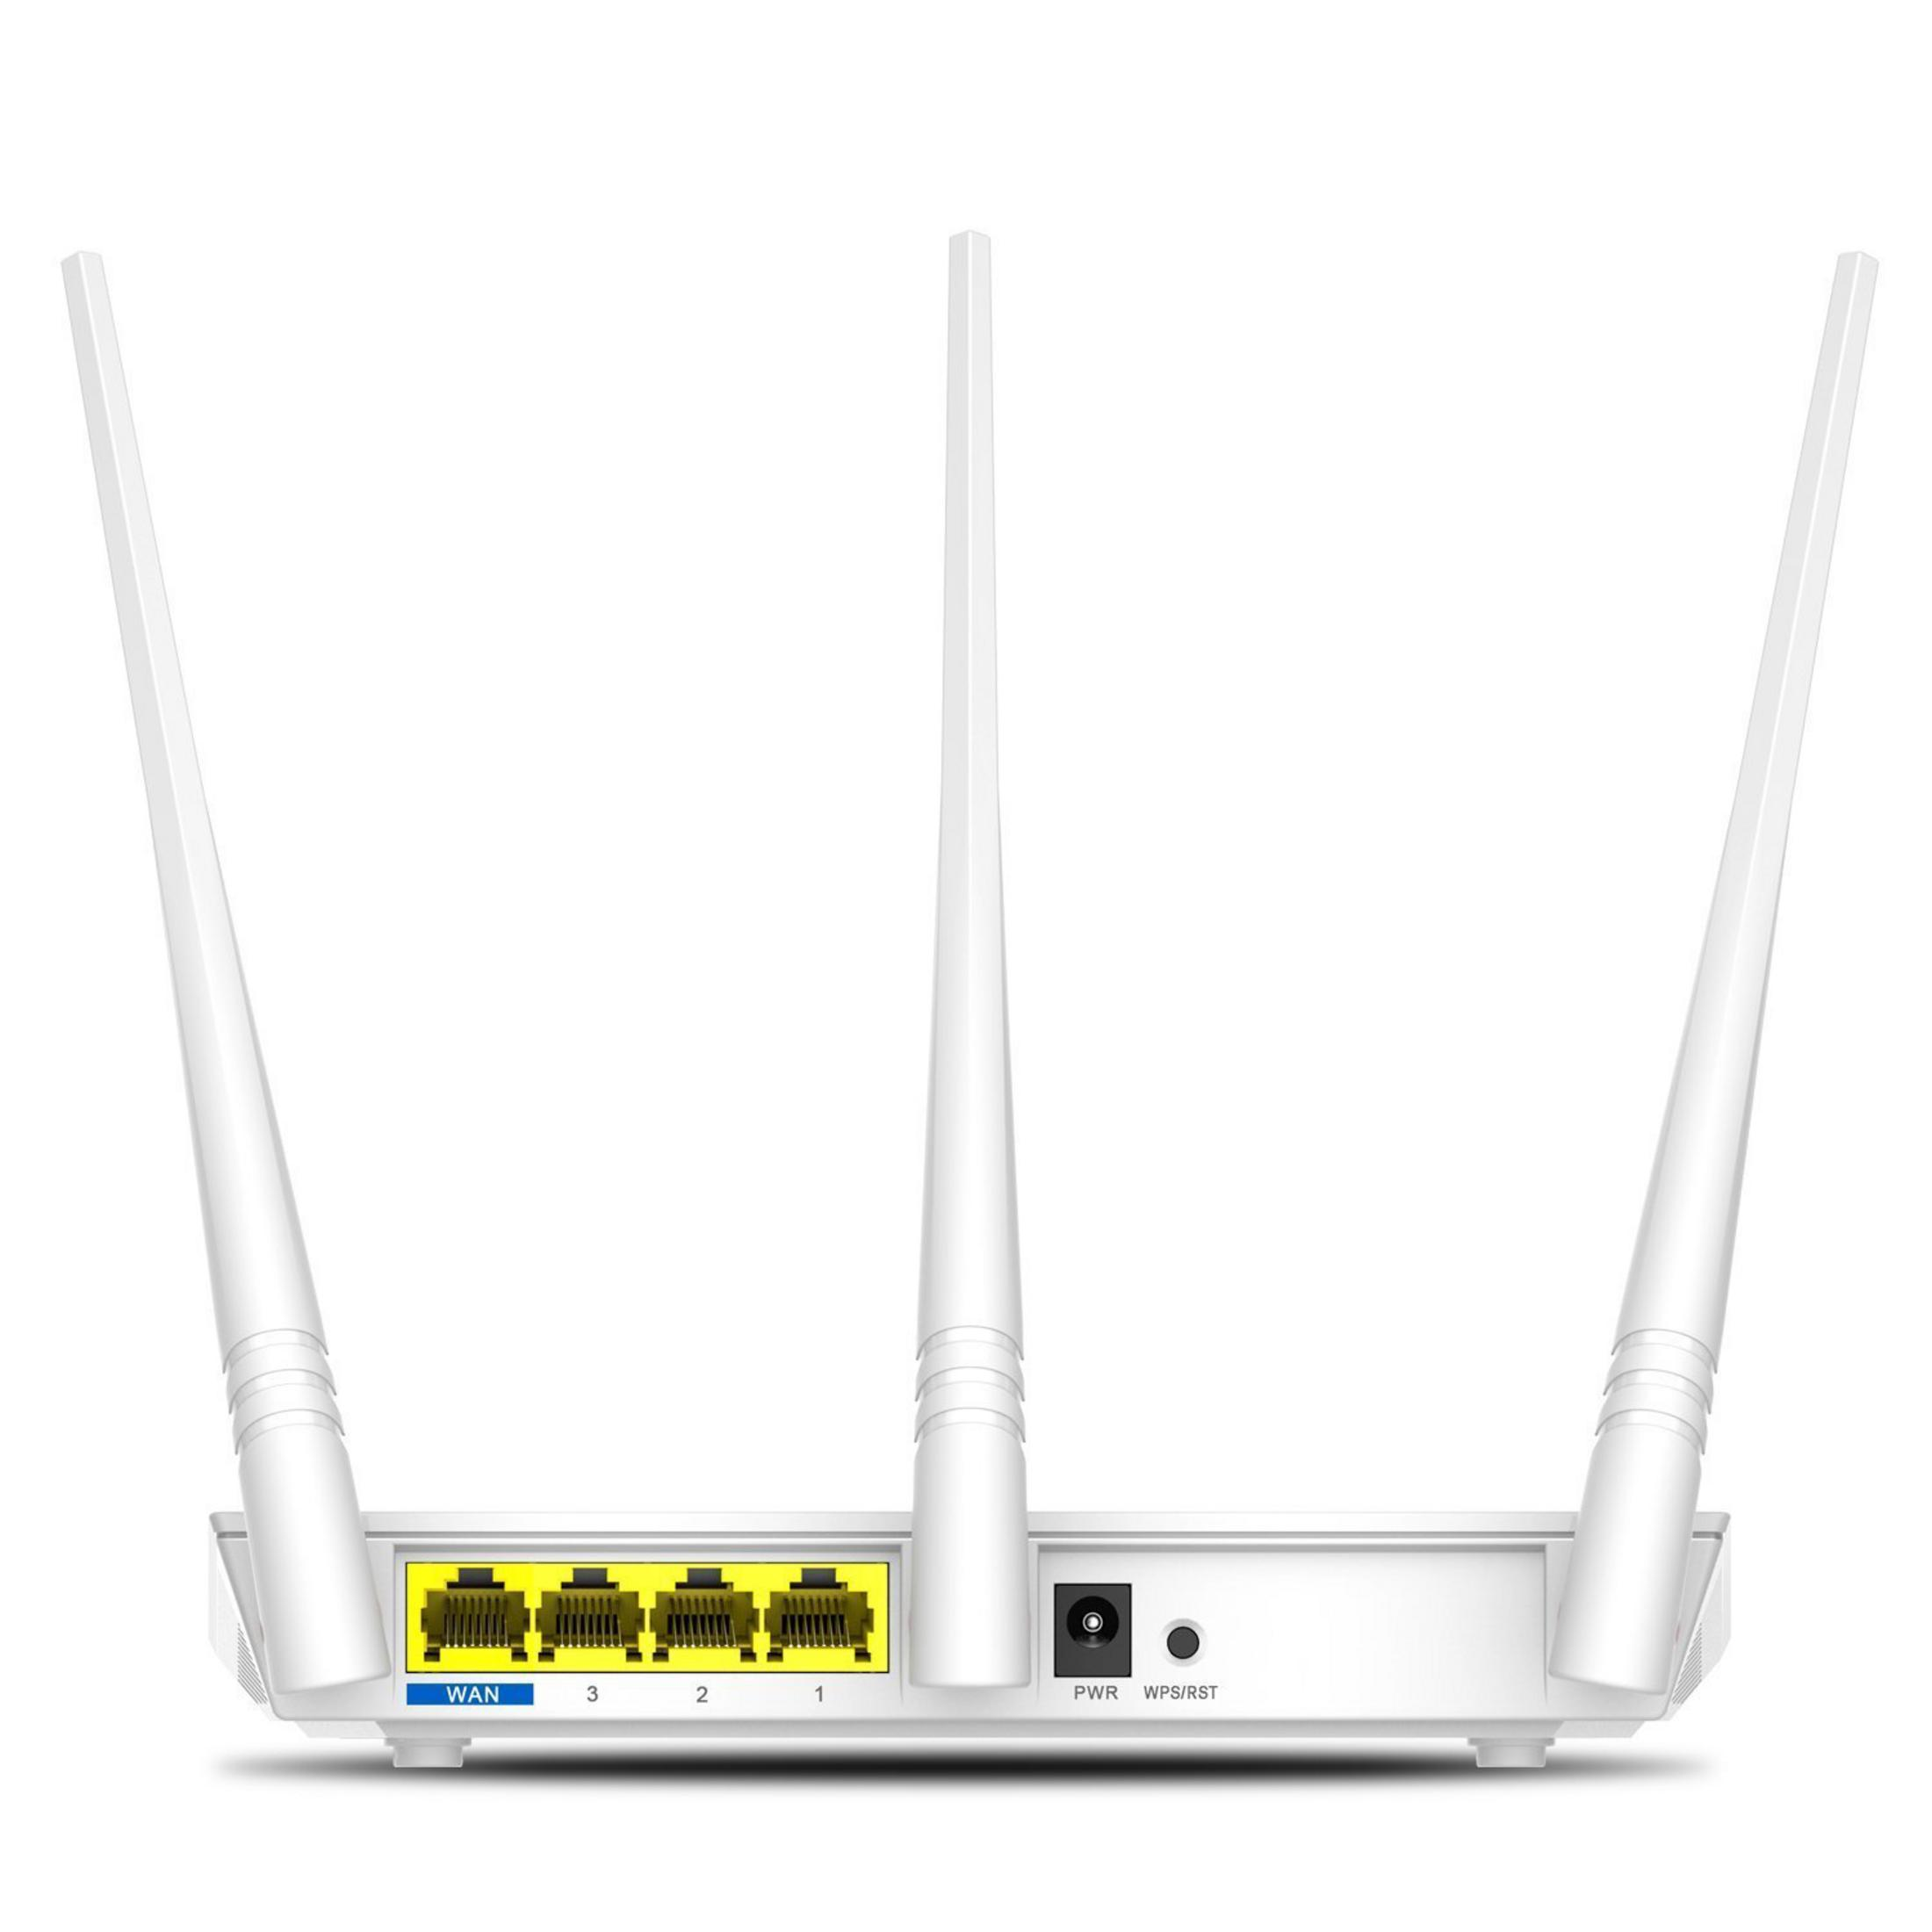 TENDA F3 WLAN ROUTER Router Mbit/s 300MBIT/S 300